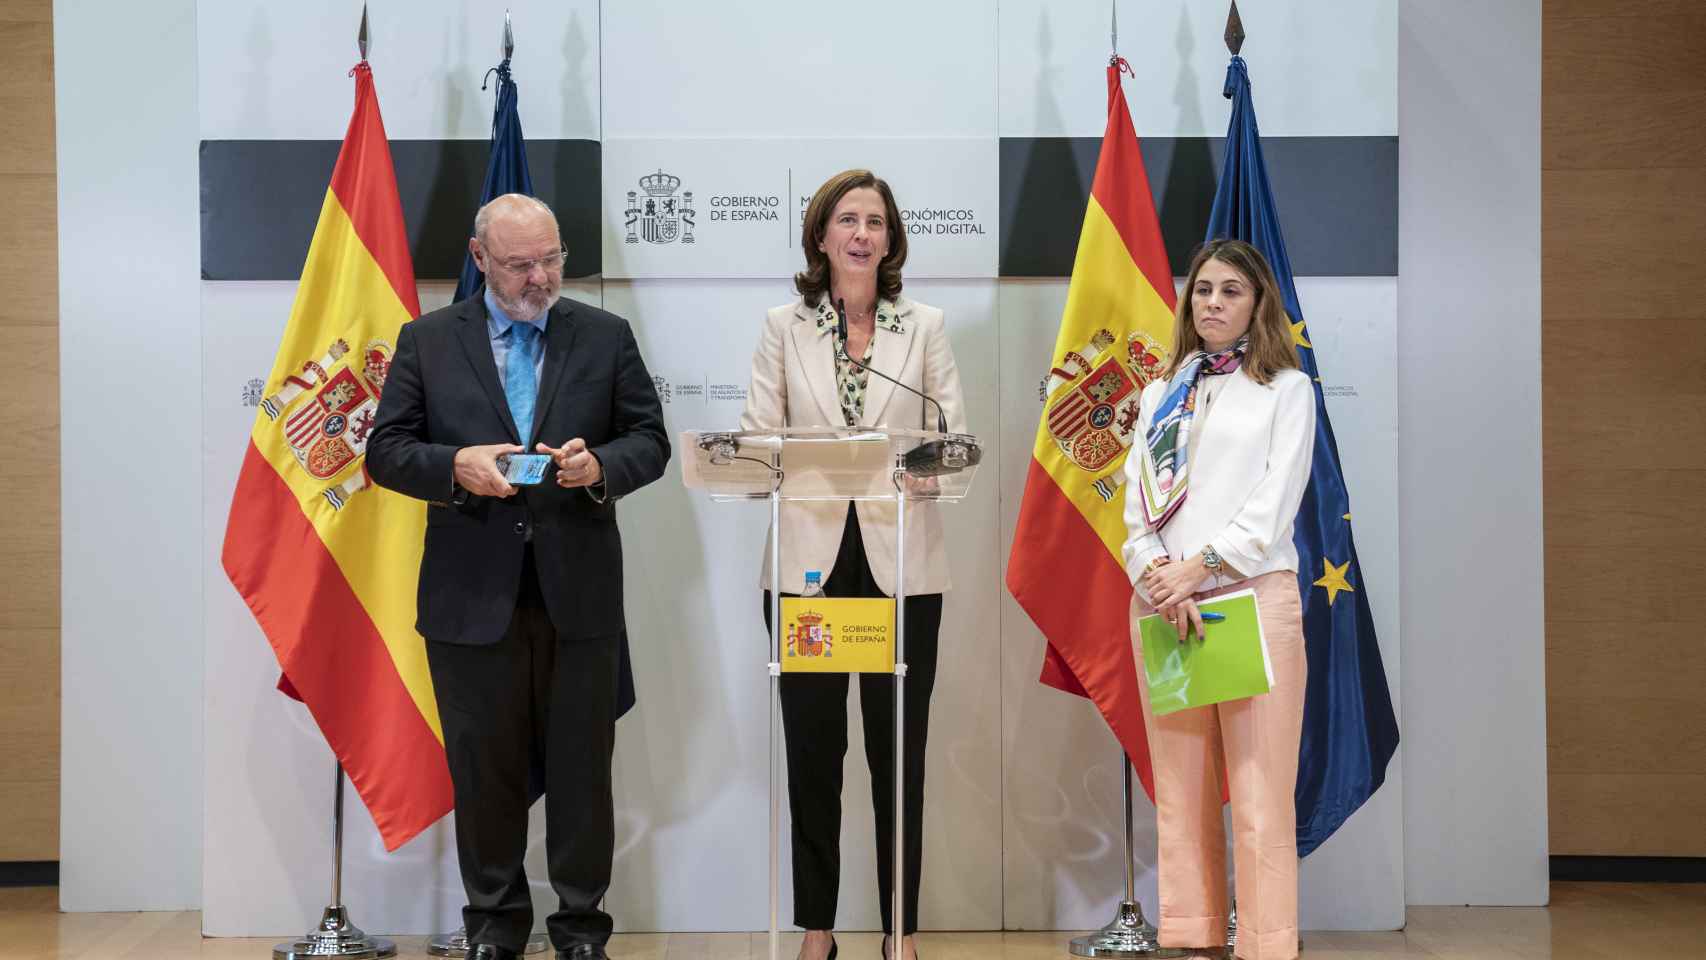 José María Méndez, presidente de CECA; Alejandra Kindelán, su homóloga en AEB, y Cristina Freijanes, secretaria general de Unacc, en la rueda de prensa posterior a una reunión con la vicepresidenta Nadia Calviño.